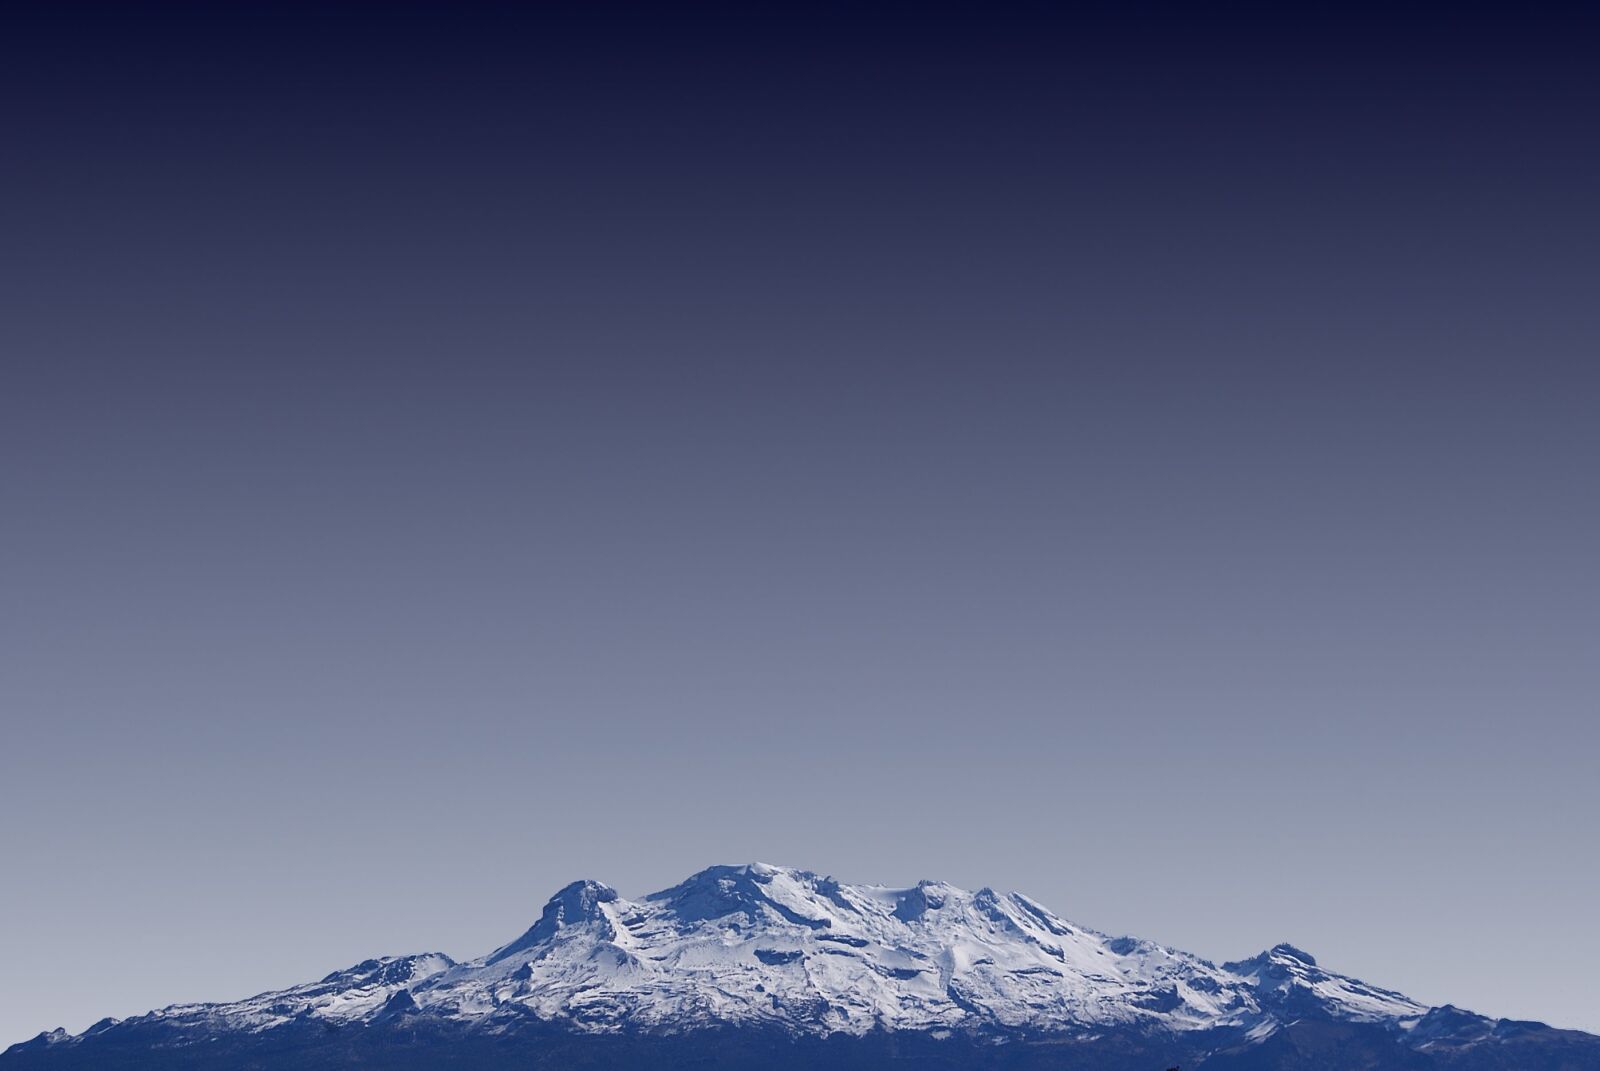 Sony Alpha DSLR-A200 sample photo. Volcano, mountain landscape, landscape photography